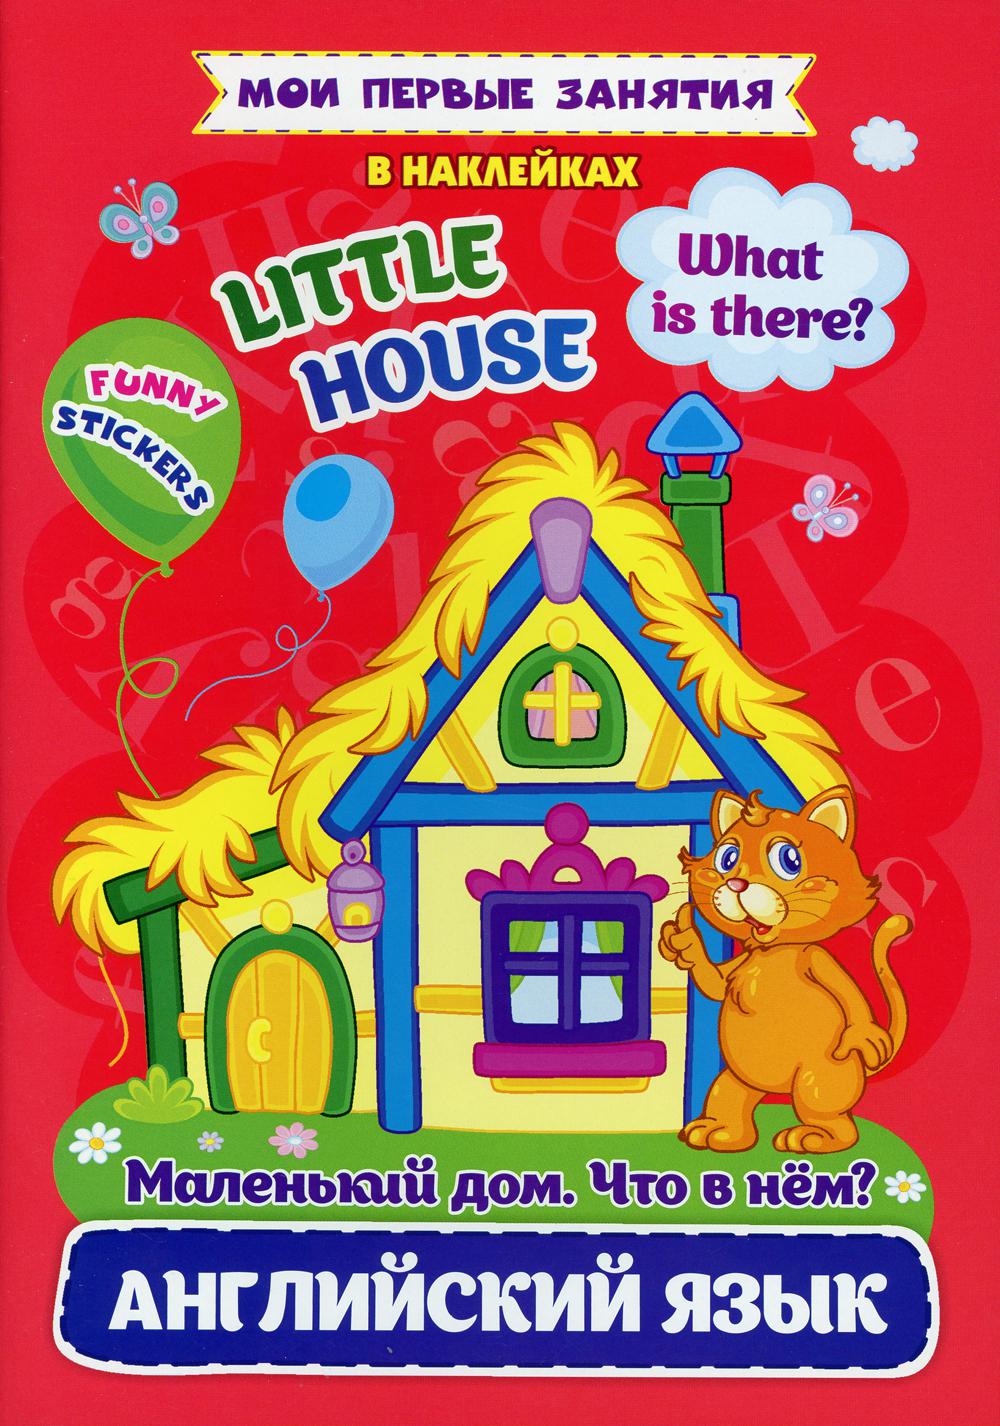 Маленький дом. Что в нем? Little house. What is there? Английский язык в наклейках: Funny stickers